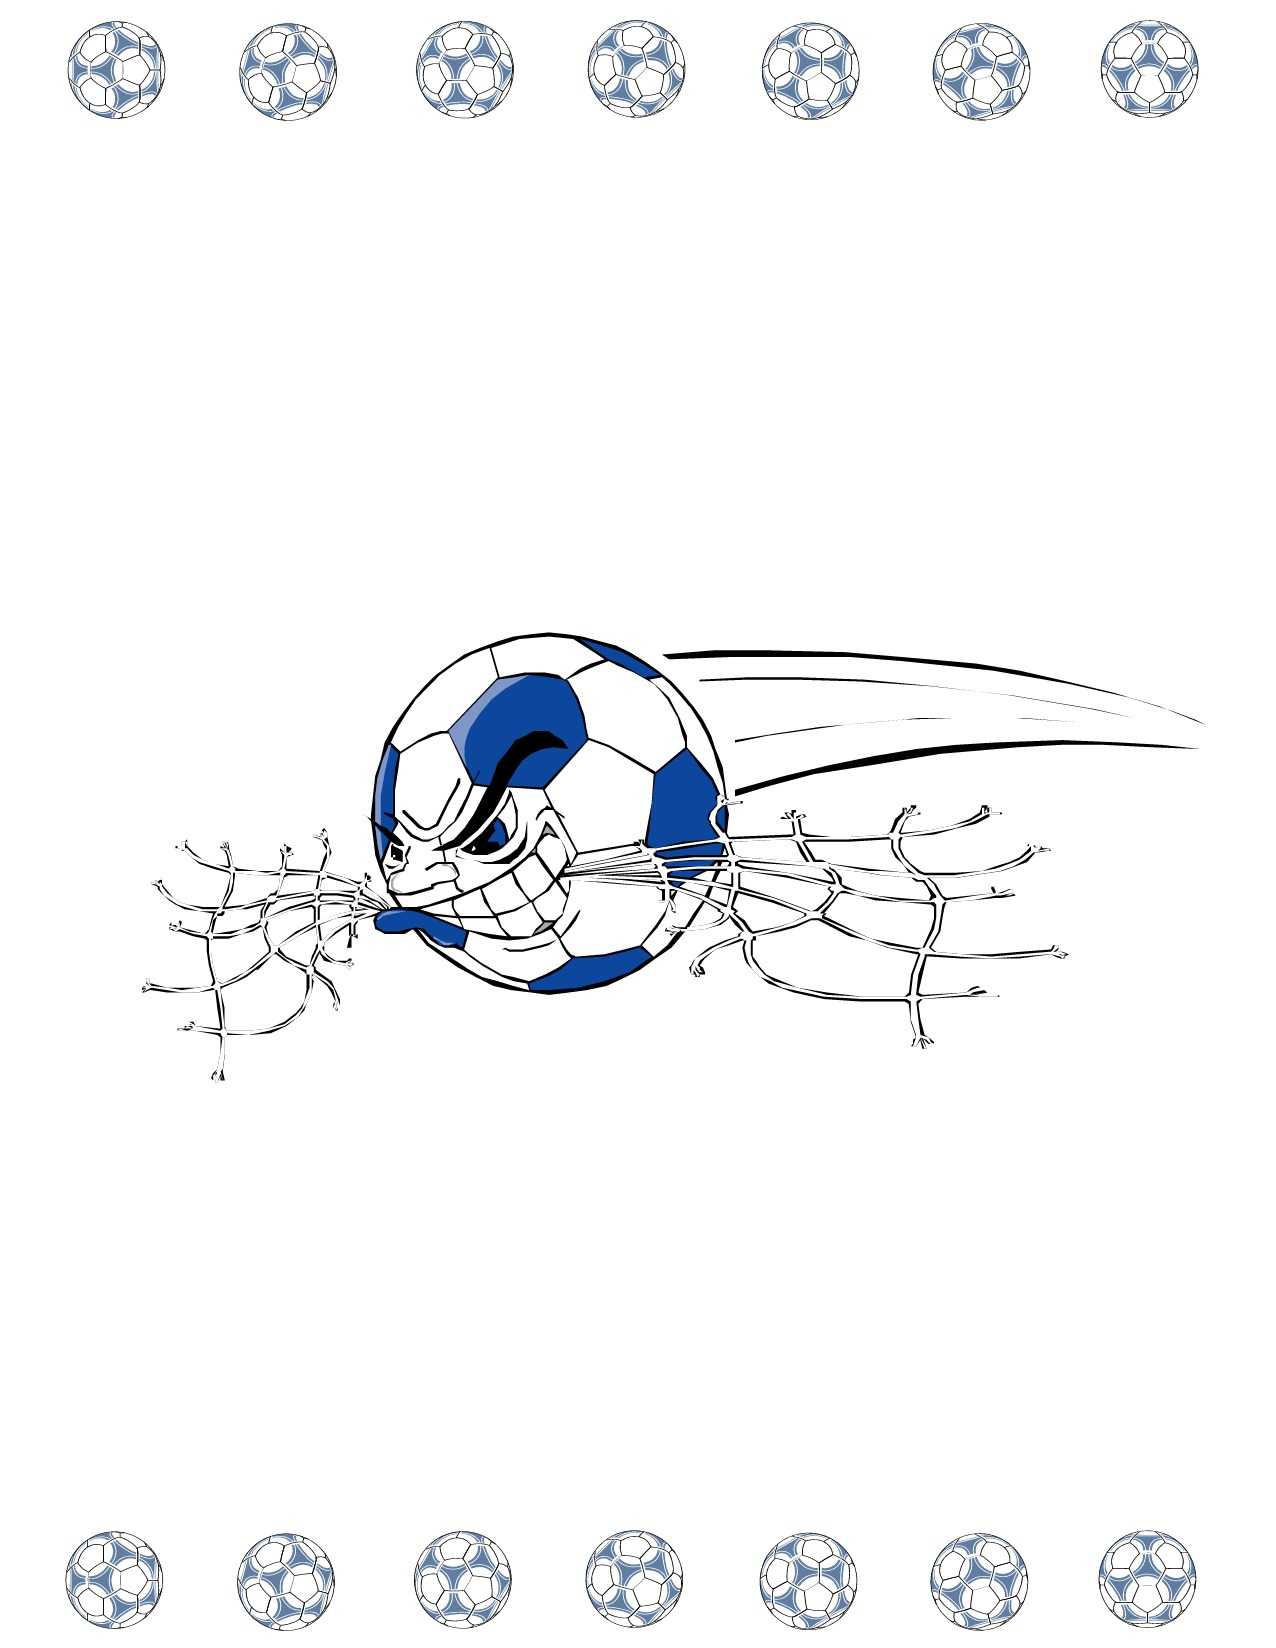 Soccer Award Certificate Maker: Make Personalized Soccer Awards Inside Soccer Award Certificate Template